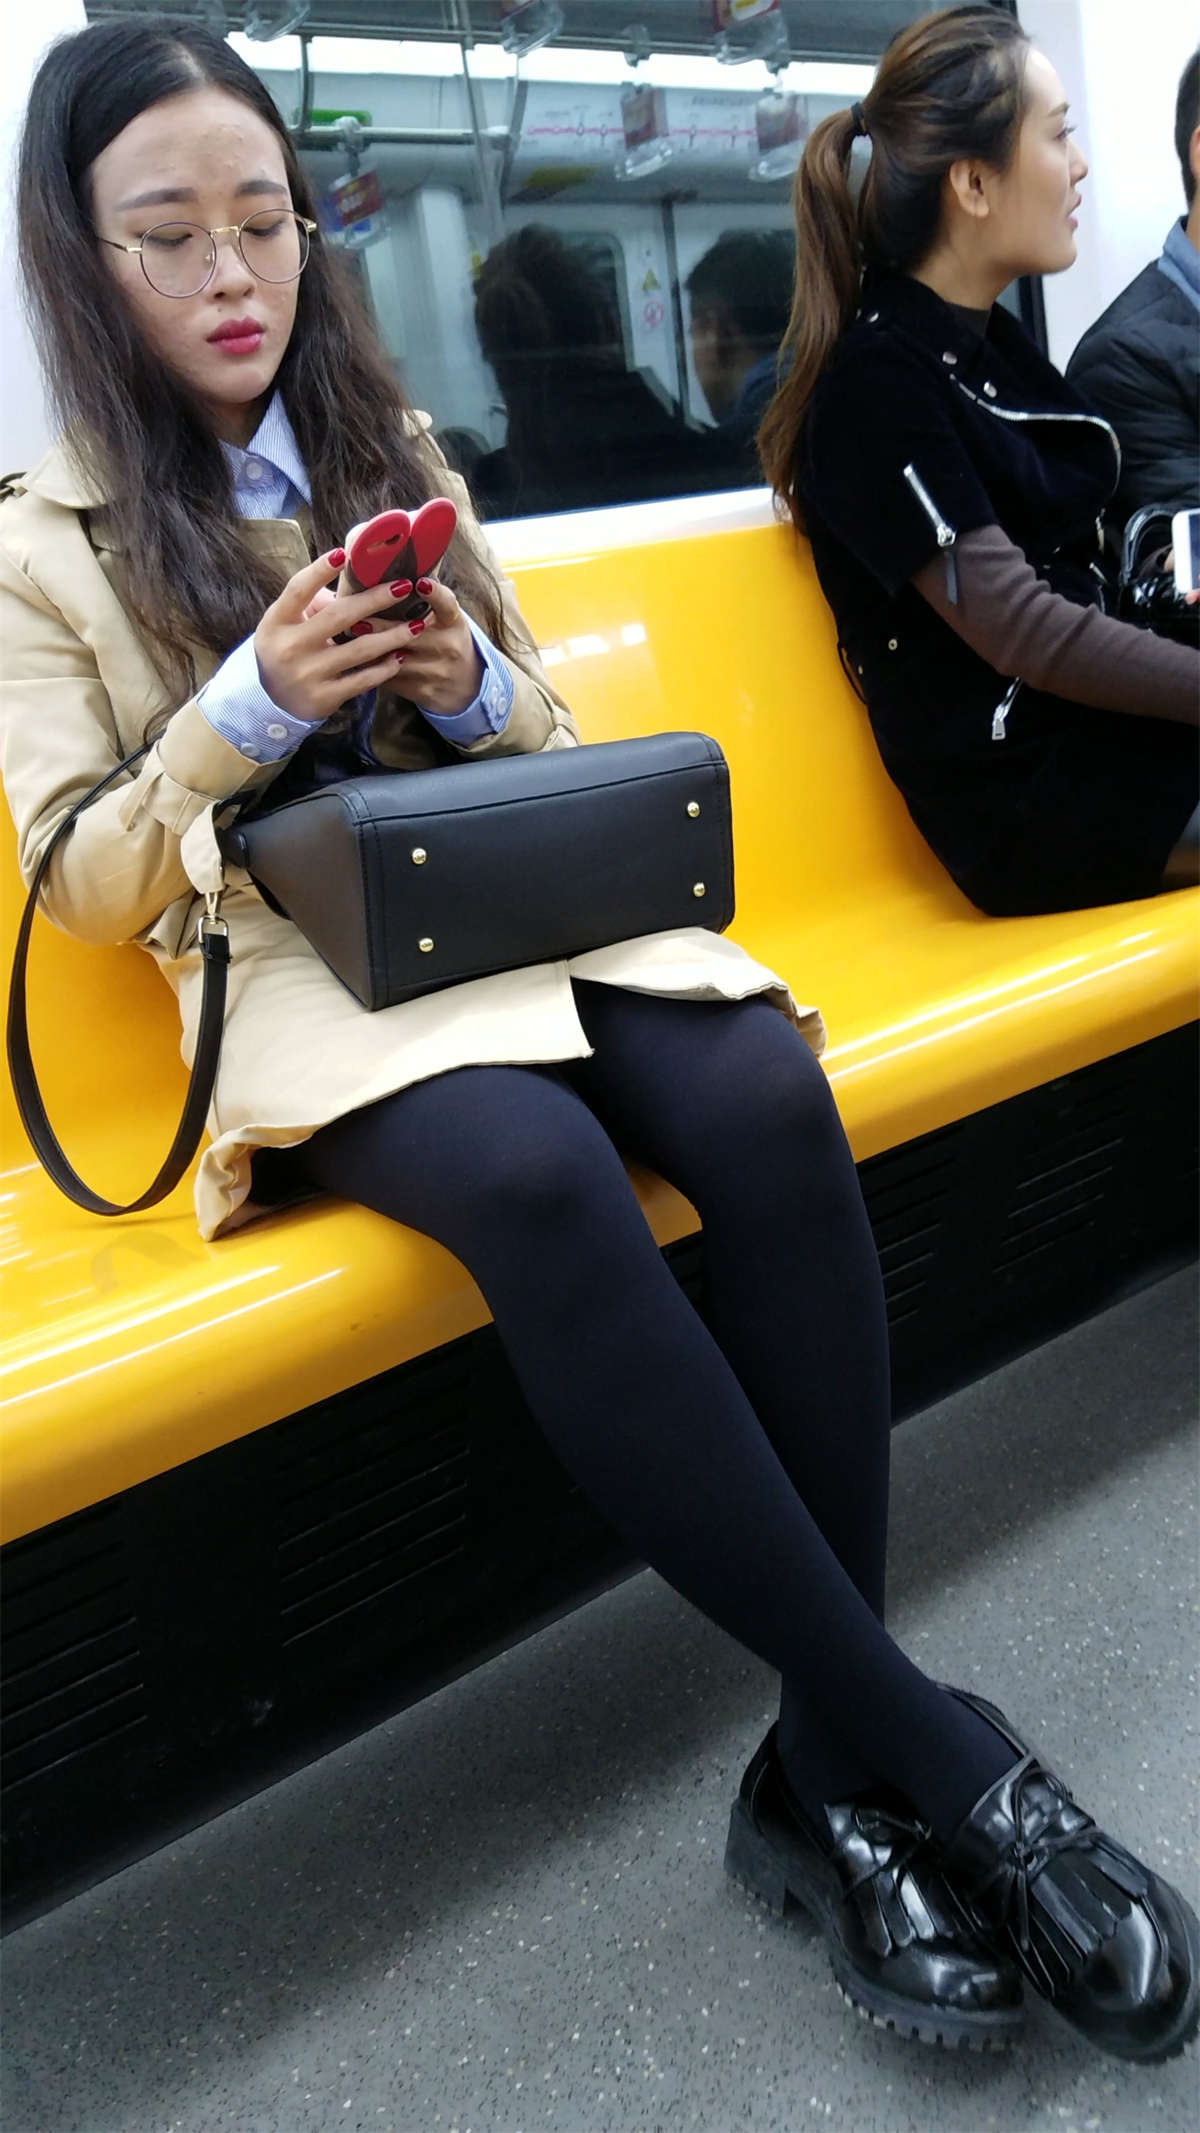 地铁少妇闪亮黑色丝袜细长美腿-魅丝社-专注分享美女写真名站摄影图集